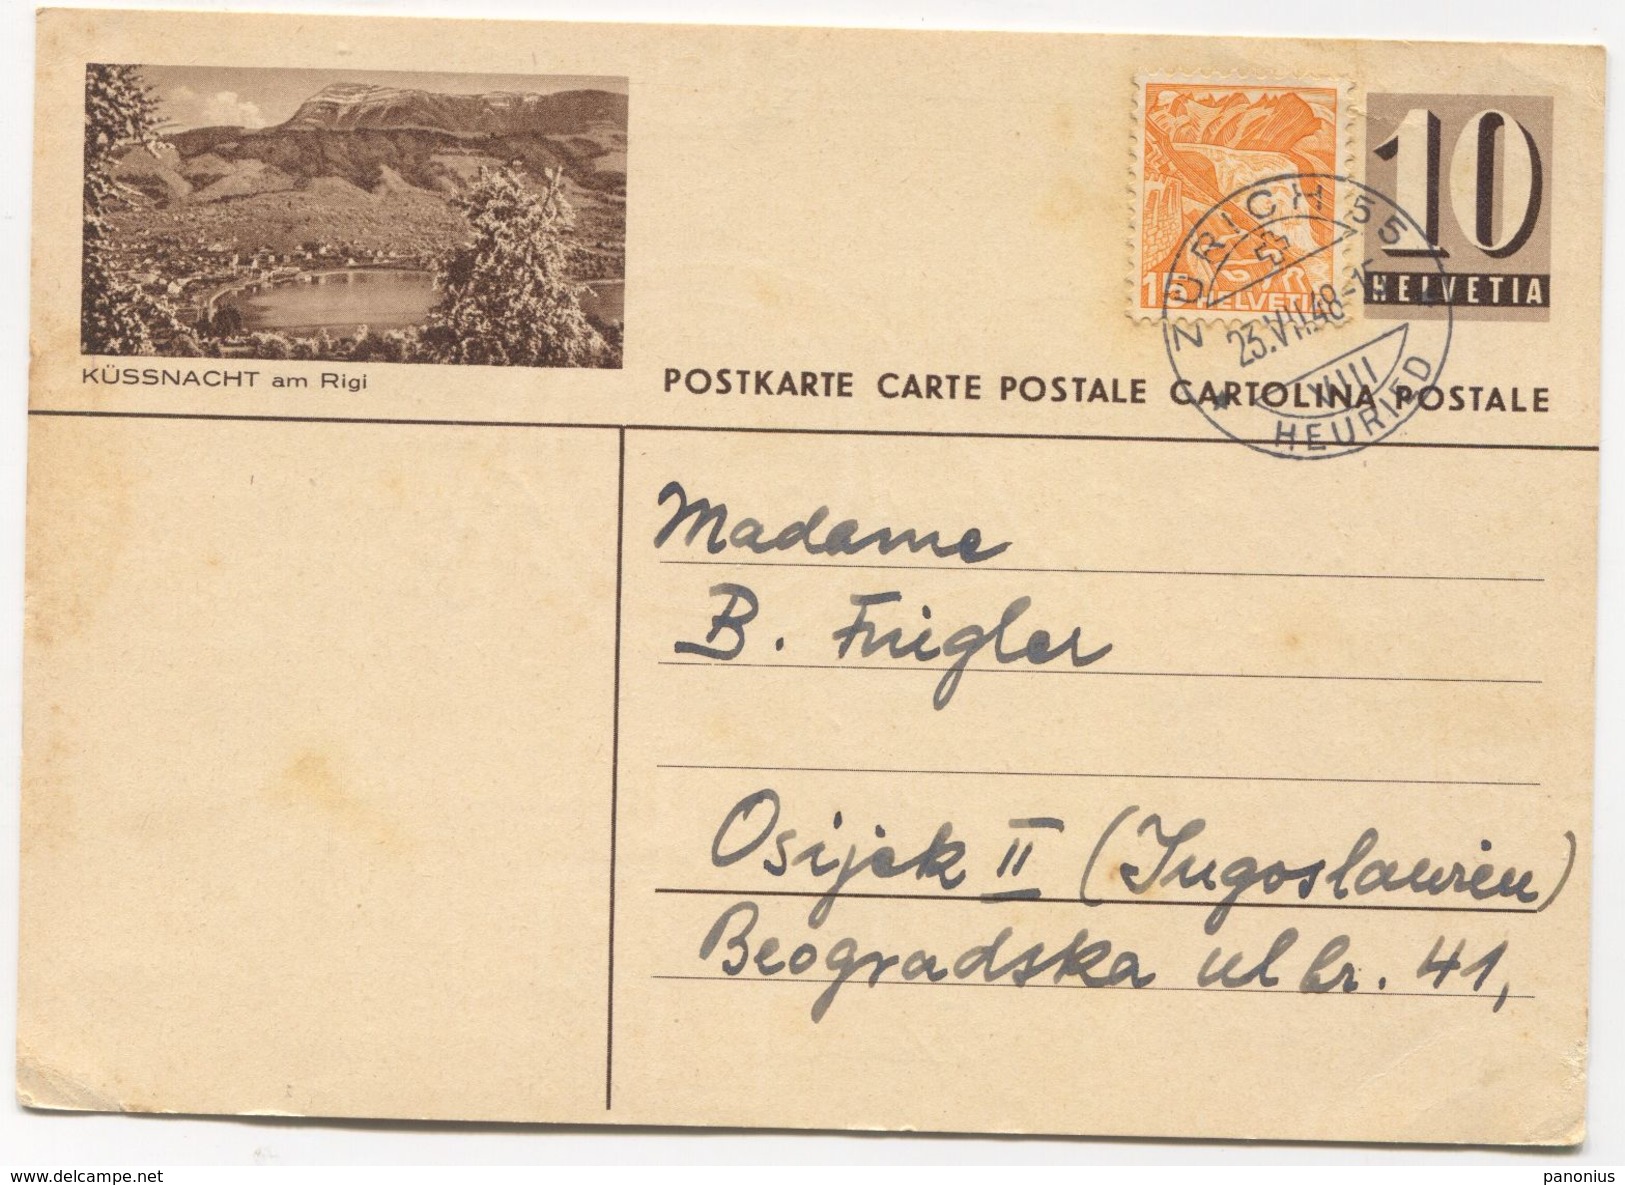 KUSSNACHT / AM RIGI - SWITZERLAND, Seal ZURICH, ILLUSTRATED STATIONERY 1948. USED - Ganzsachen